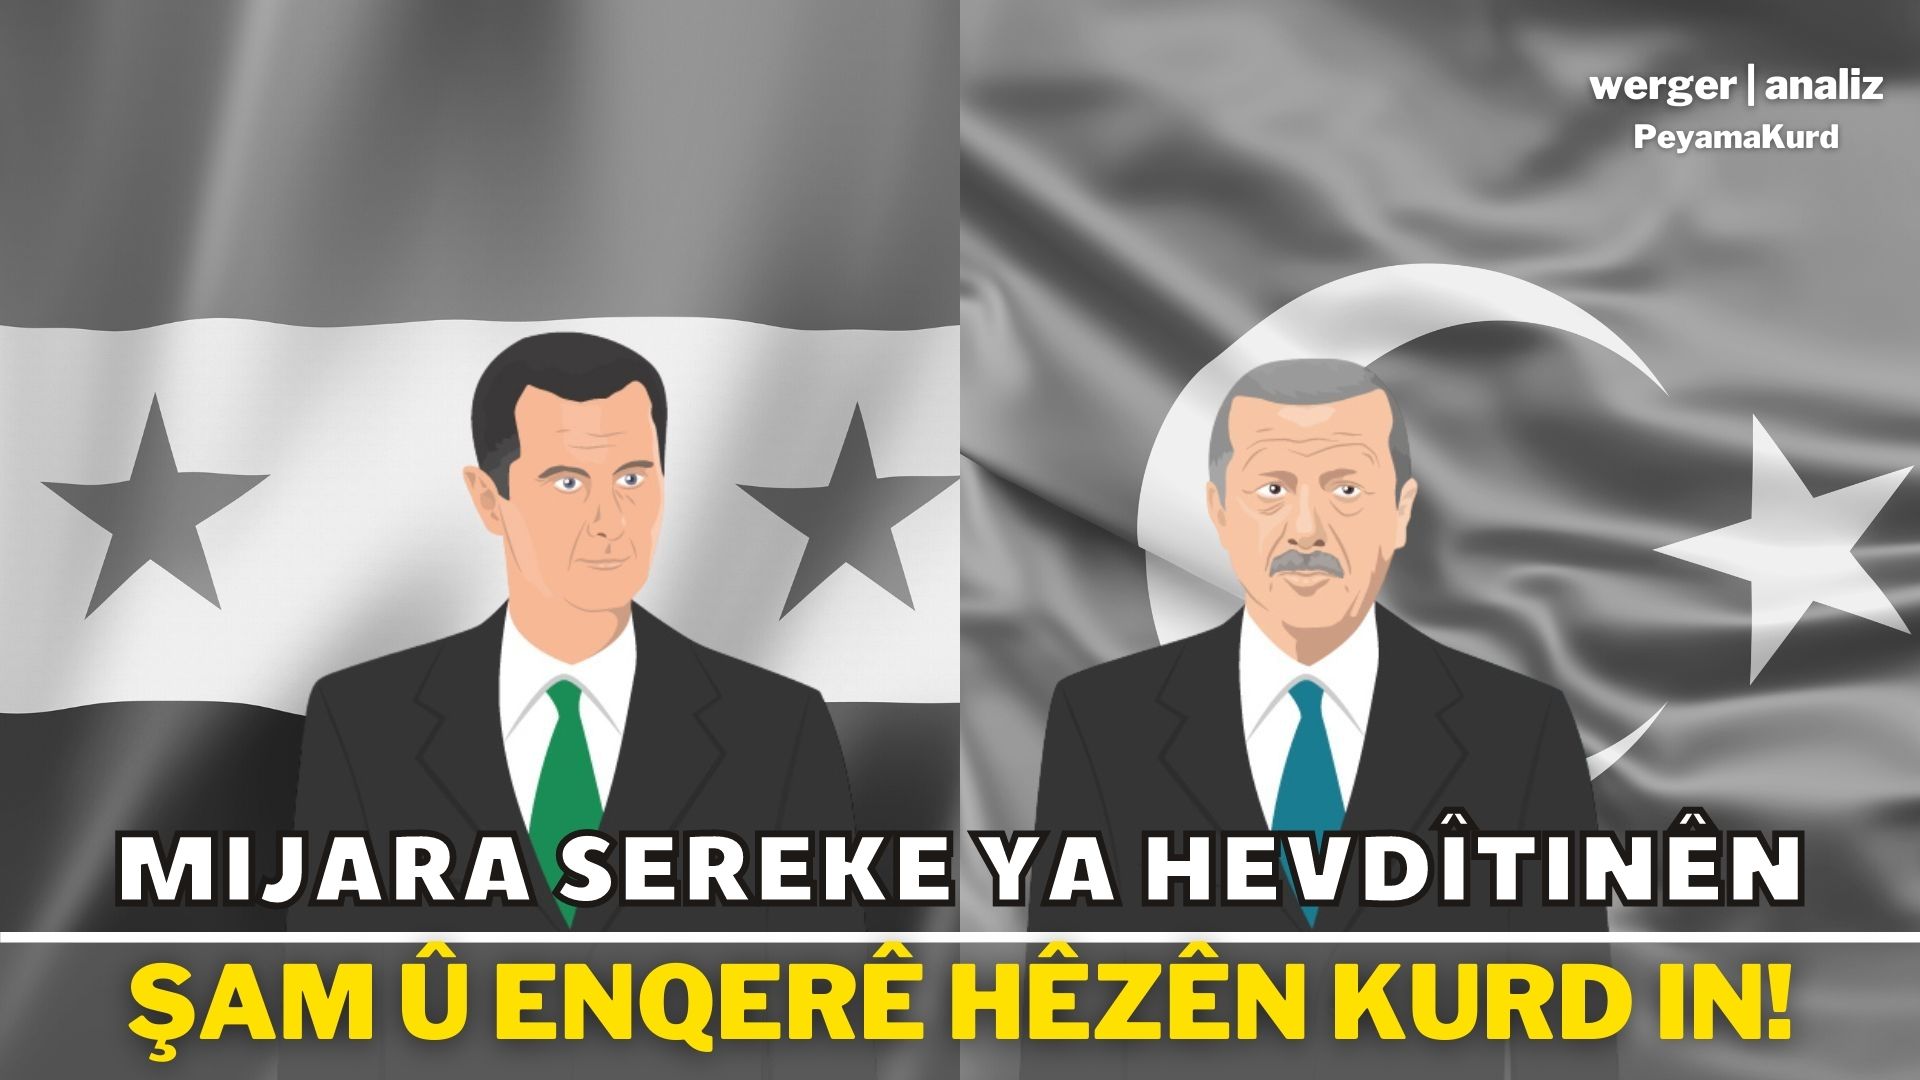 Hêzên Kurd û Tirkiye! Wê Esed çi pêşniyarê li Tirkiyeyê bike?